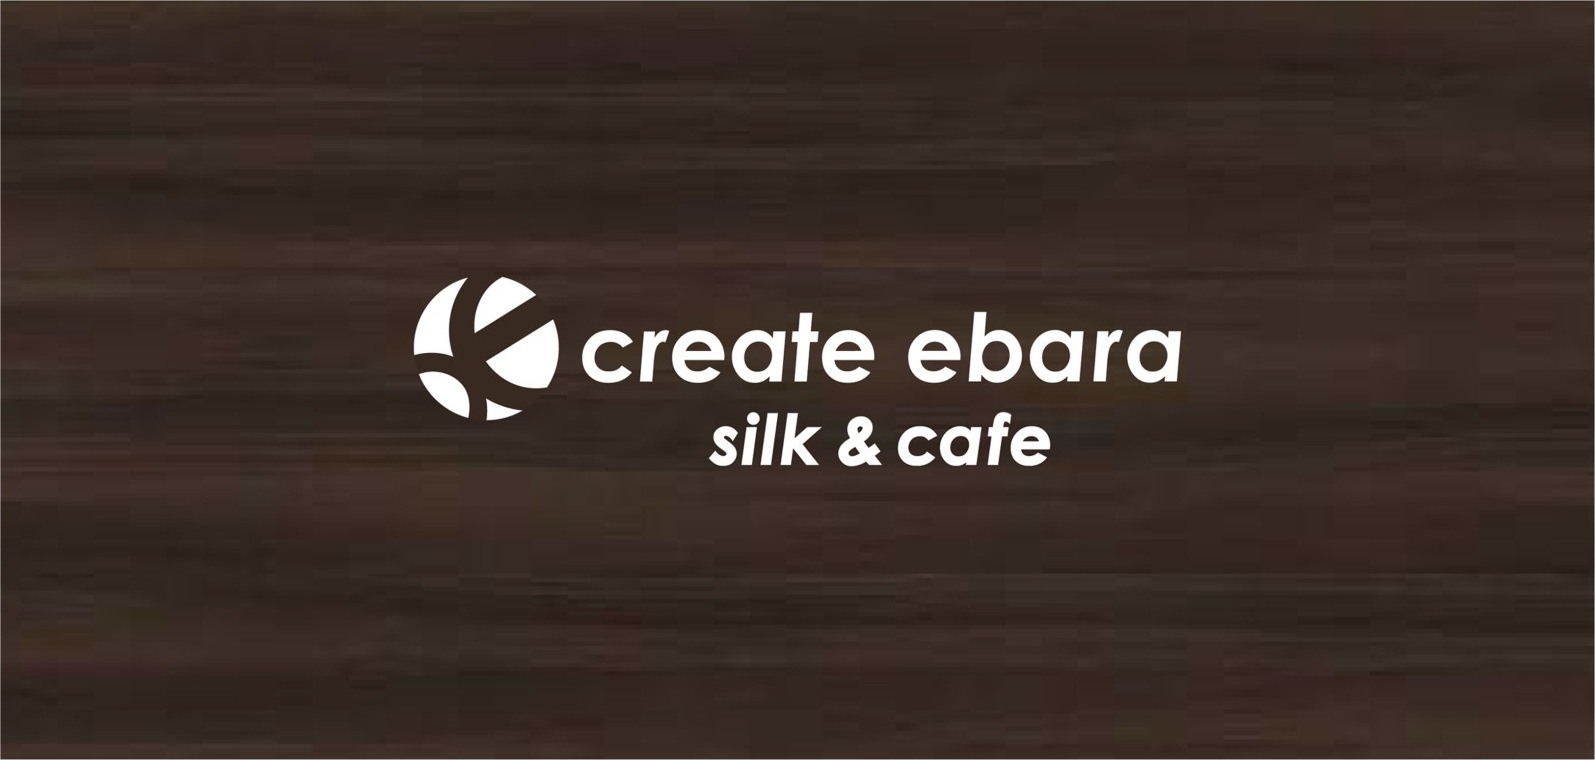 create ebara silk & cafe